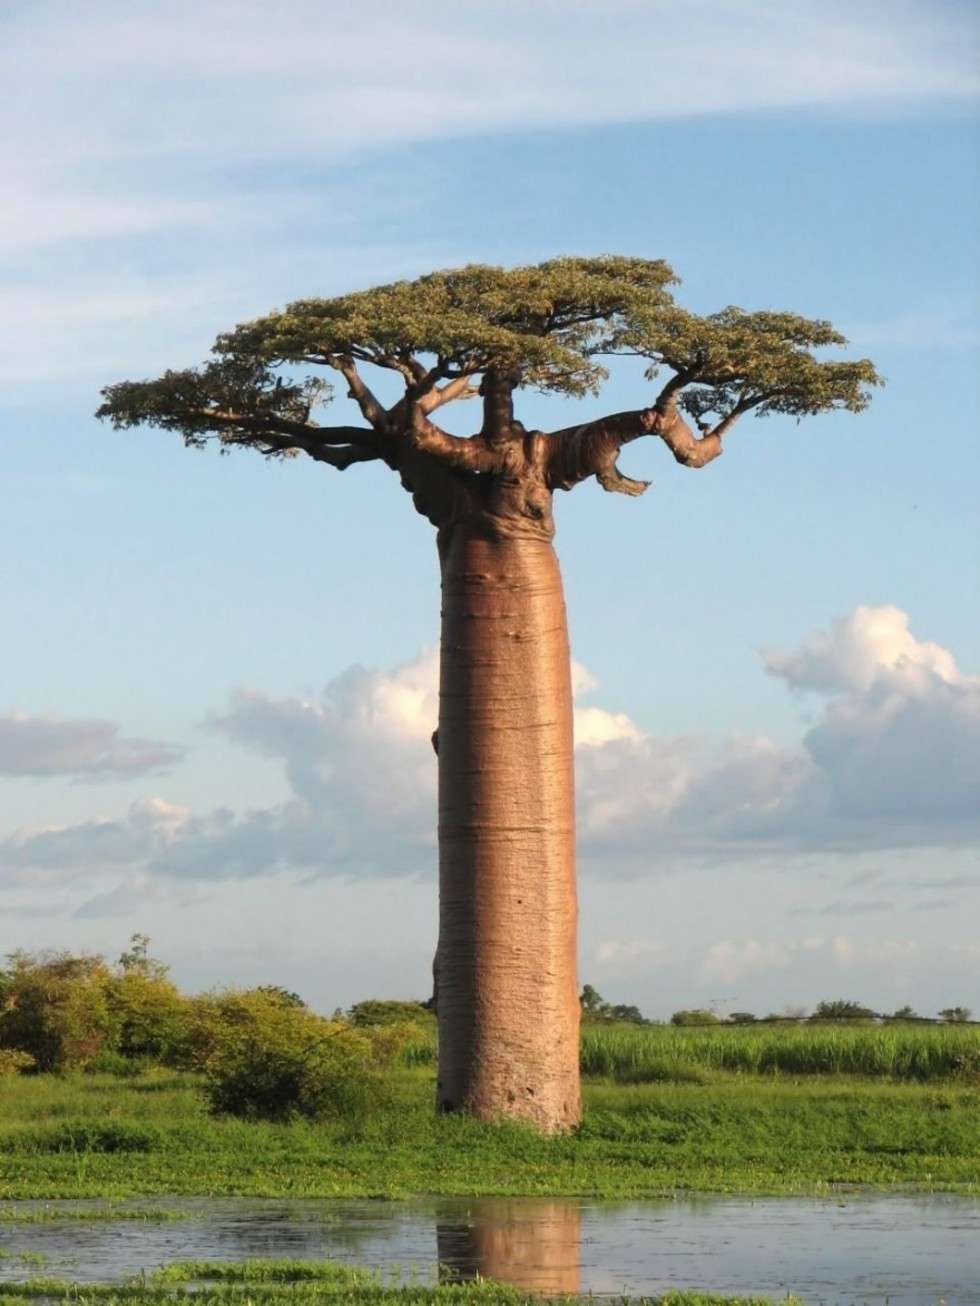  Zdjęcie Baobabu grandidiera - największego z sześciu gatunków tych drzew na Madagaskarze. Ten sam  gatunek baobabu został przedstawiony w filmie Madagaskar (2005) jako ogromne drzewo w centrum wyspy. 